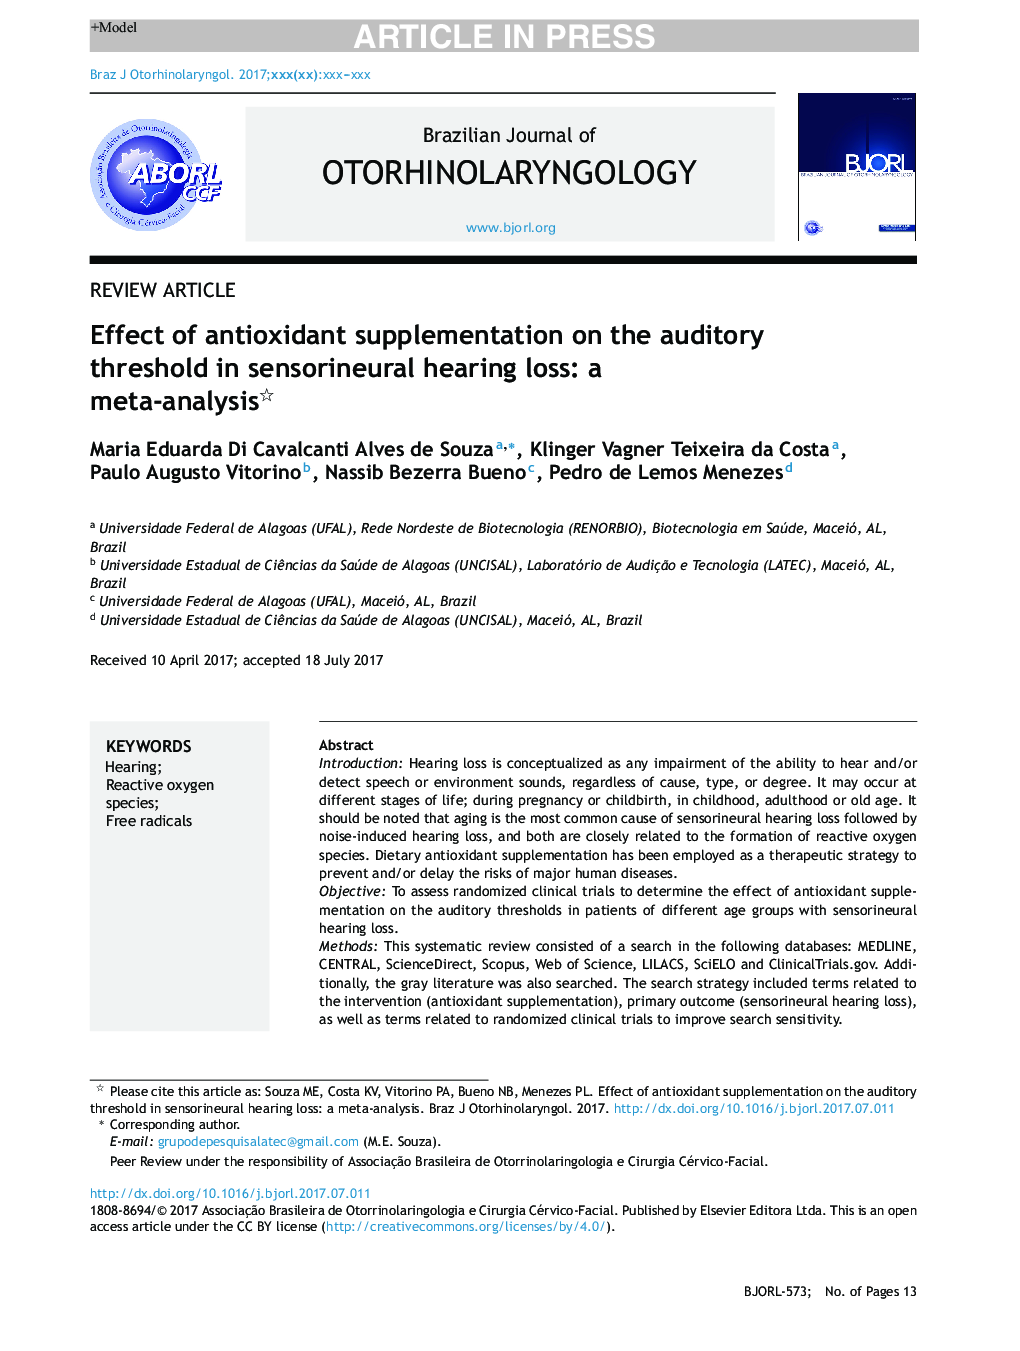 اثر مکمل آنتی اکسیدان بر آستانه شنوایی در کاهش حس شنوایی شنوایی: یک متاآنالیز 